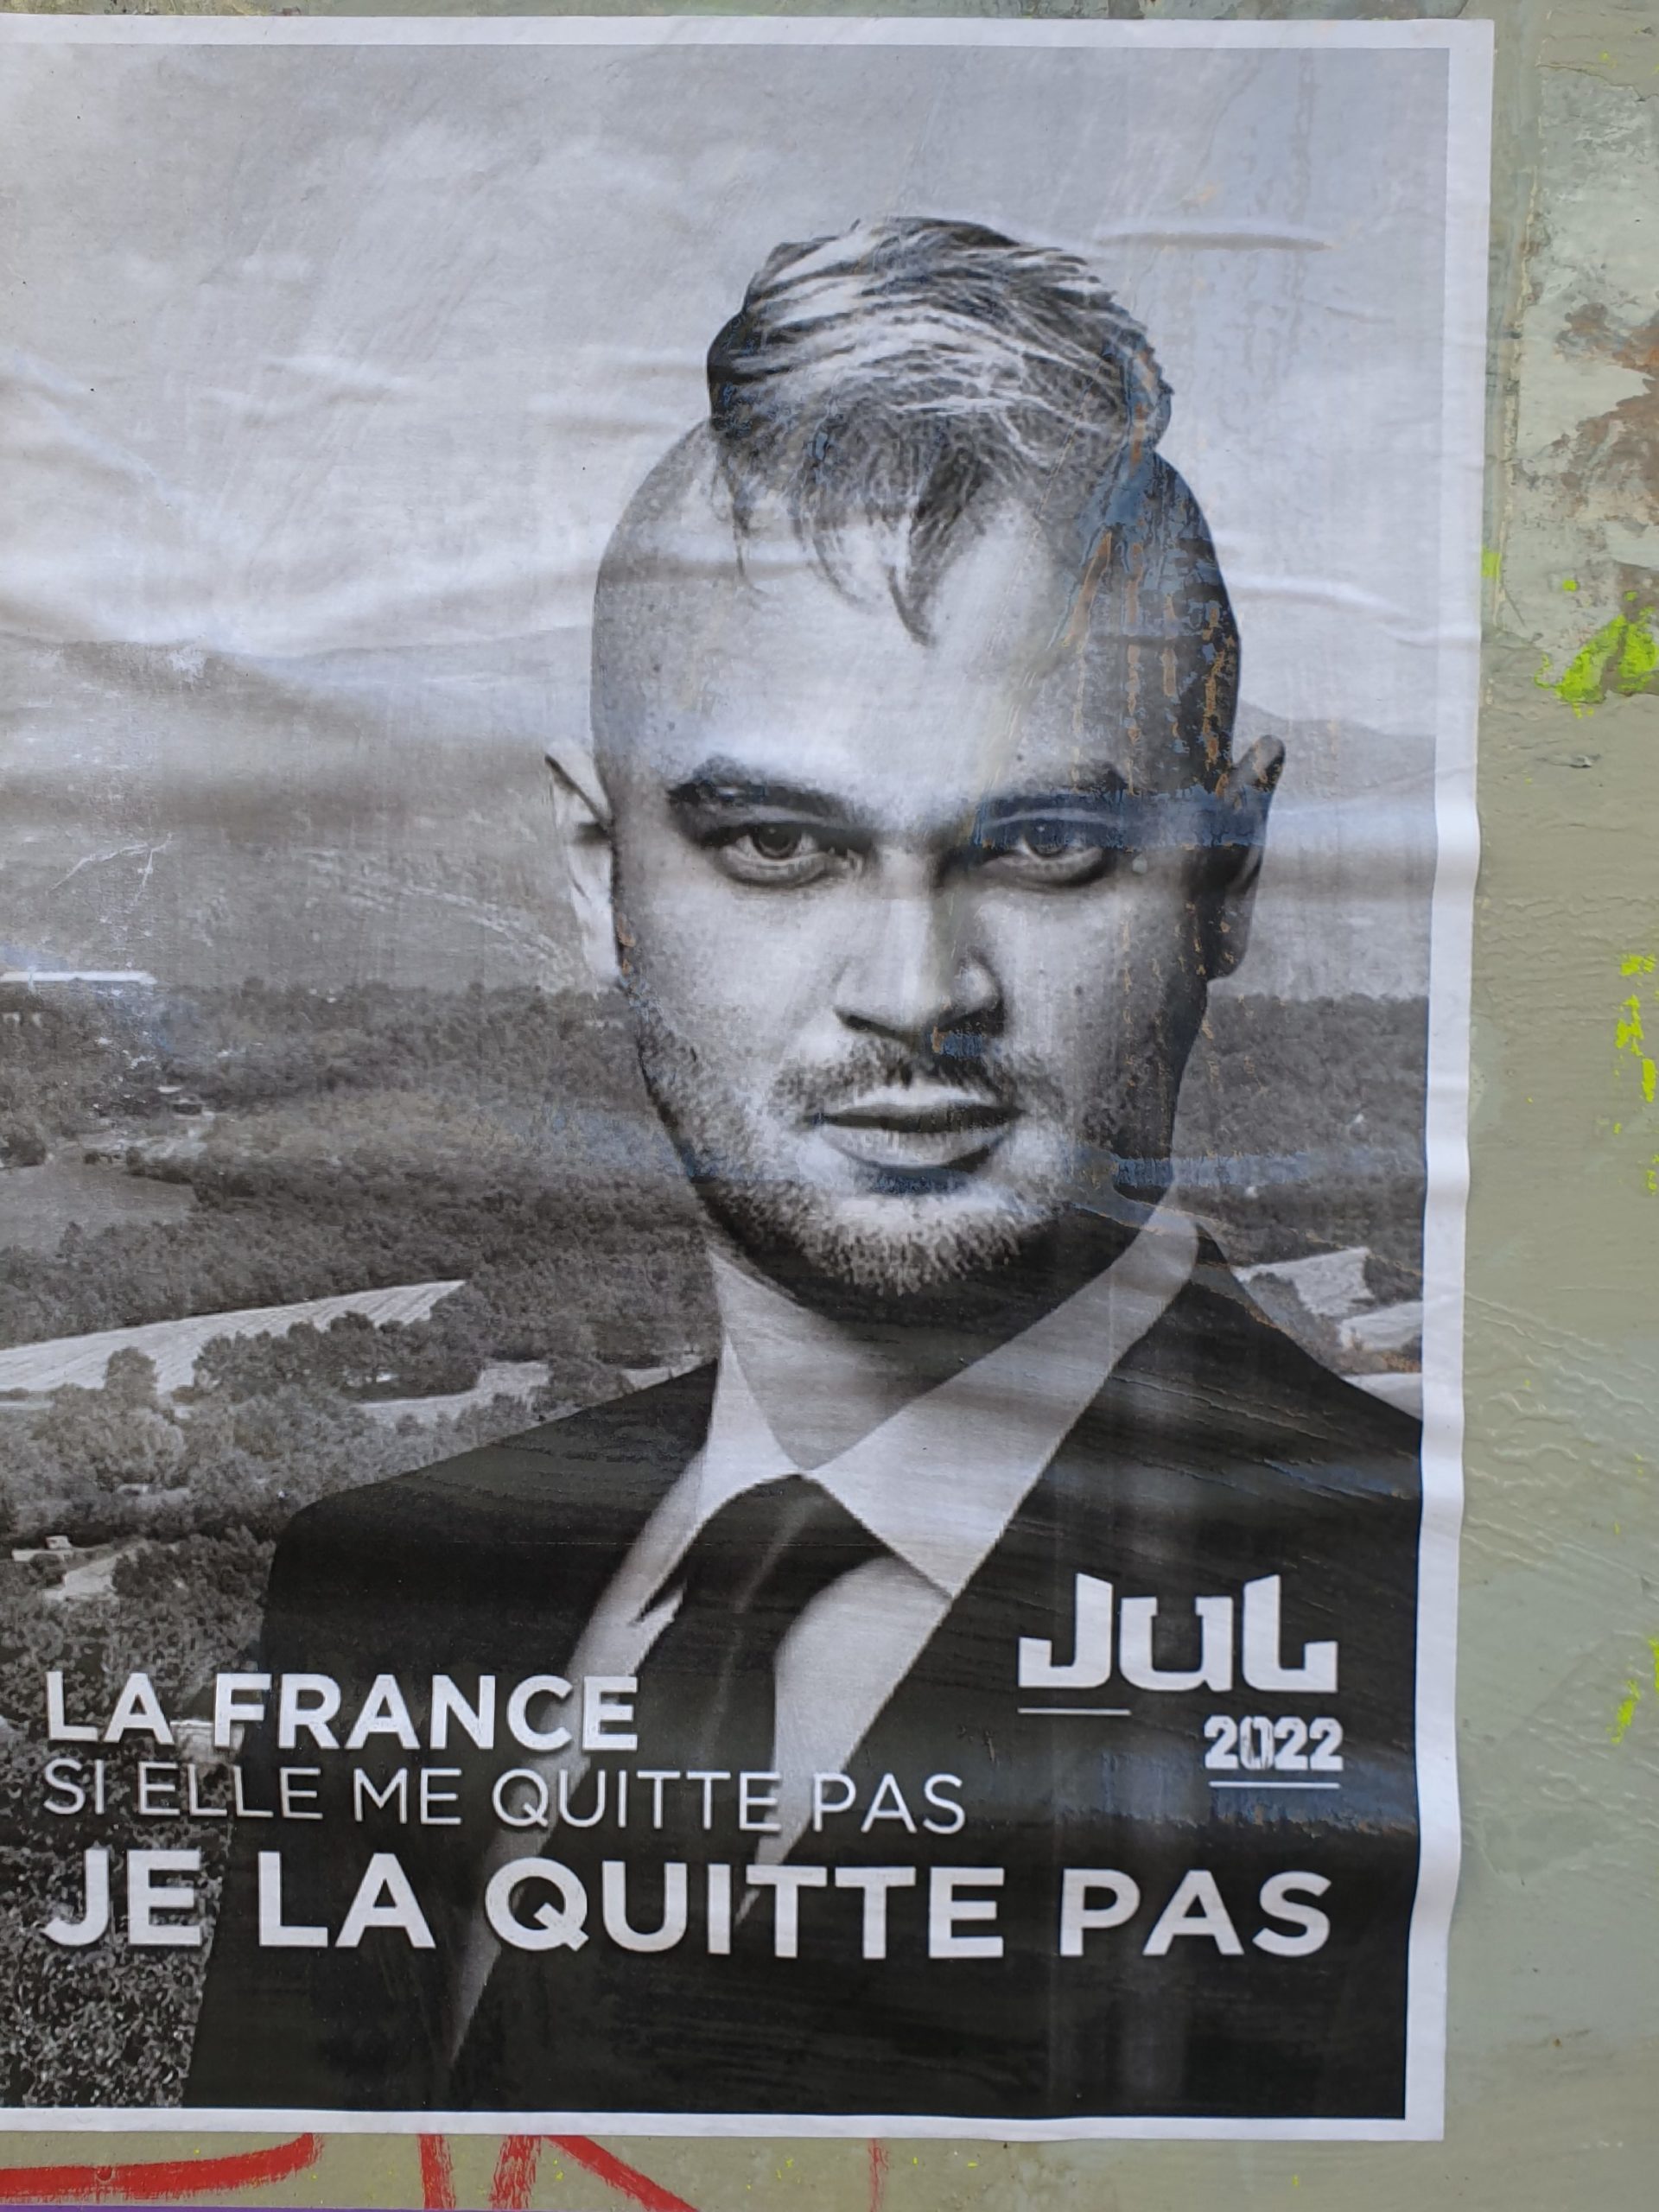 Différentes affiches ont été placardées dans les rues toulousaines pour promouvoir la campagne présidentielle de Jul. © Louane Jean